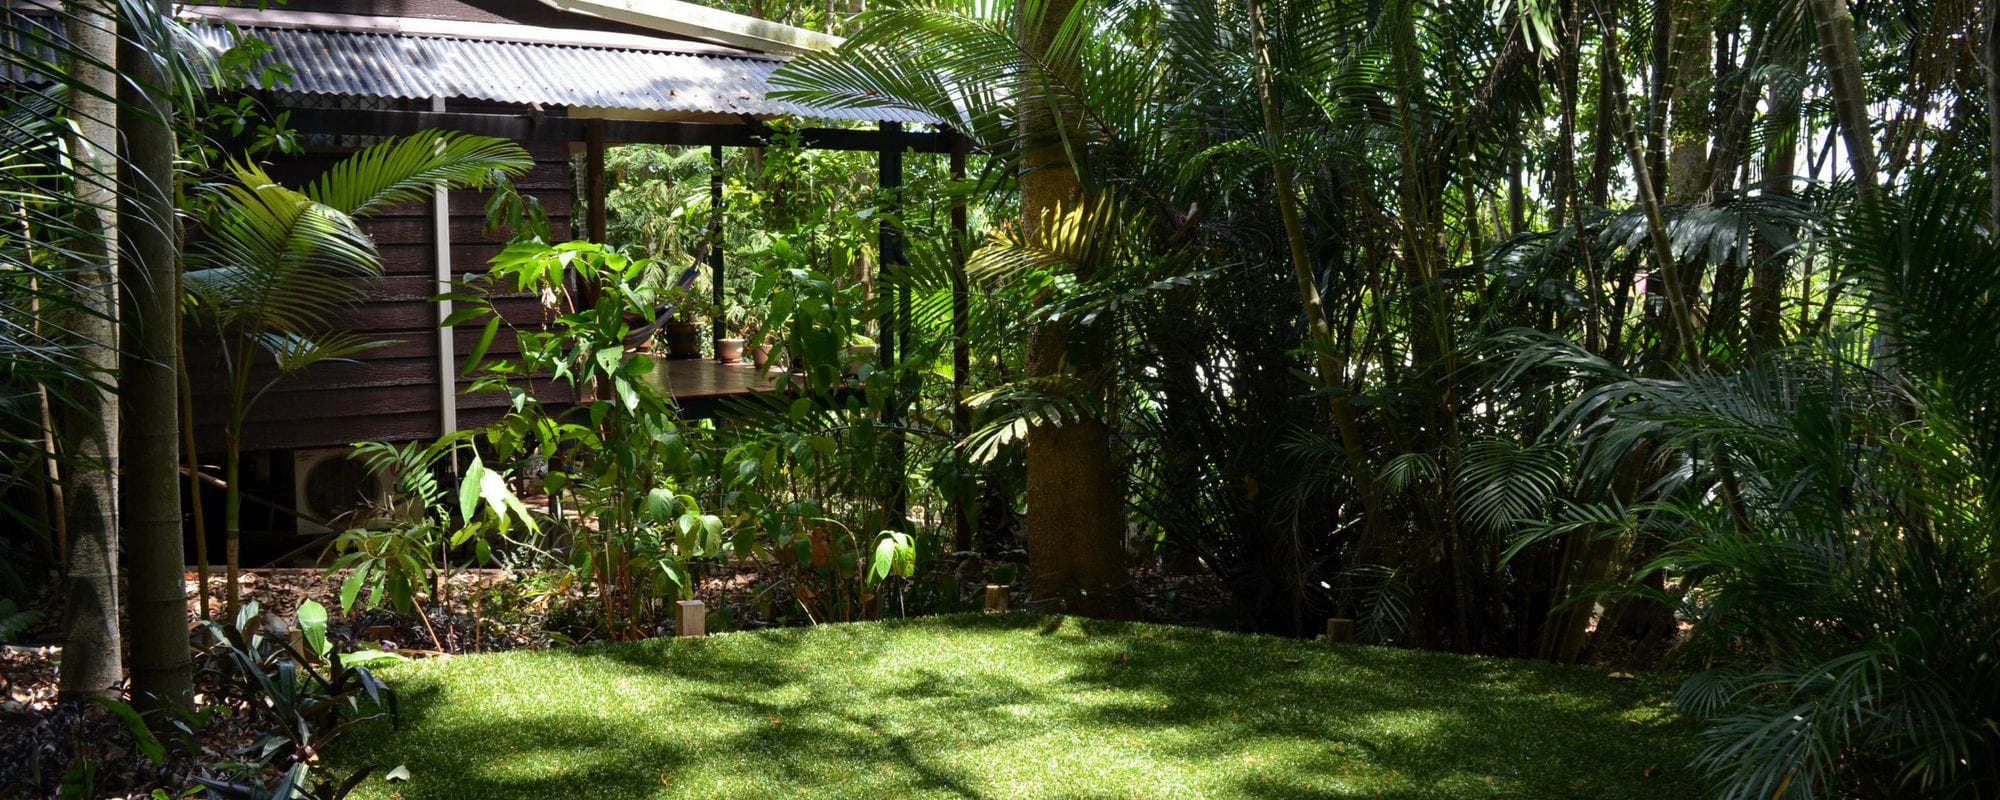 The rainforest garden behind Julie Heskin's reiki studio in Cairns